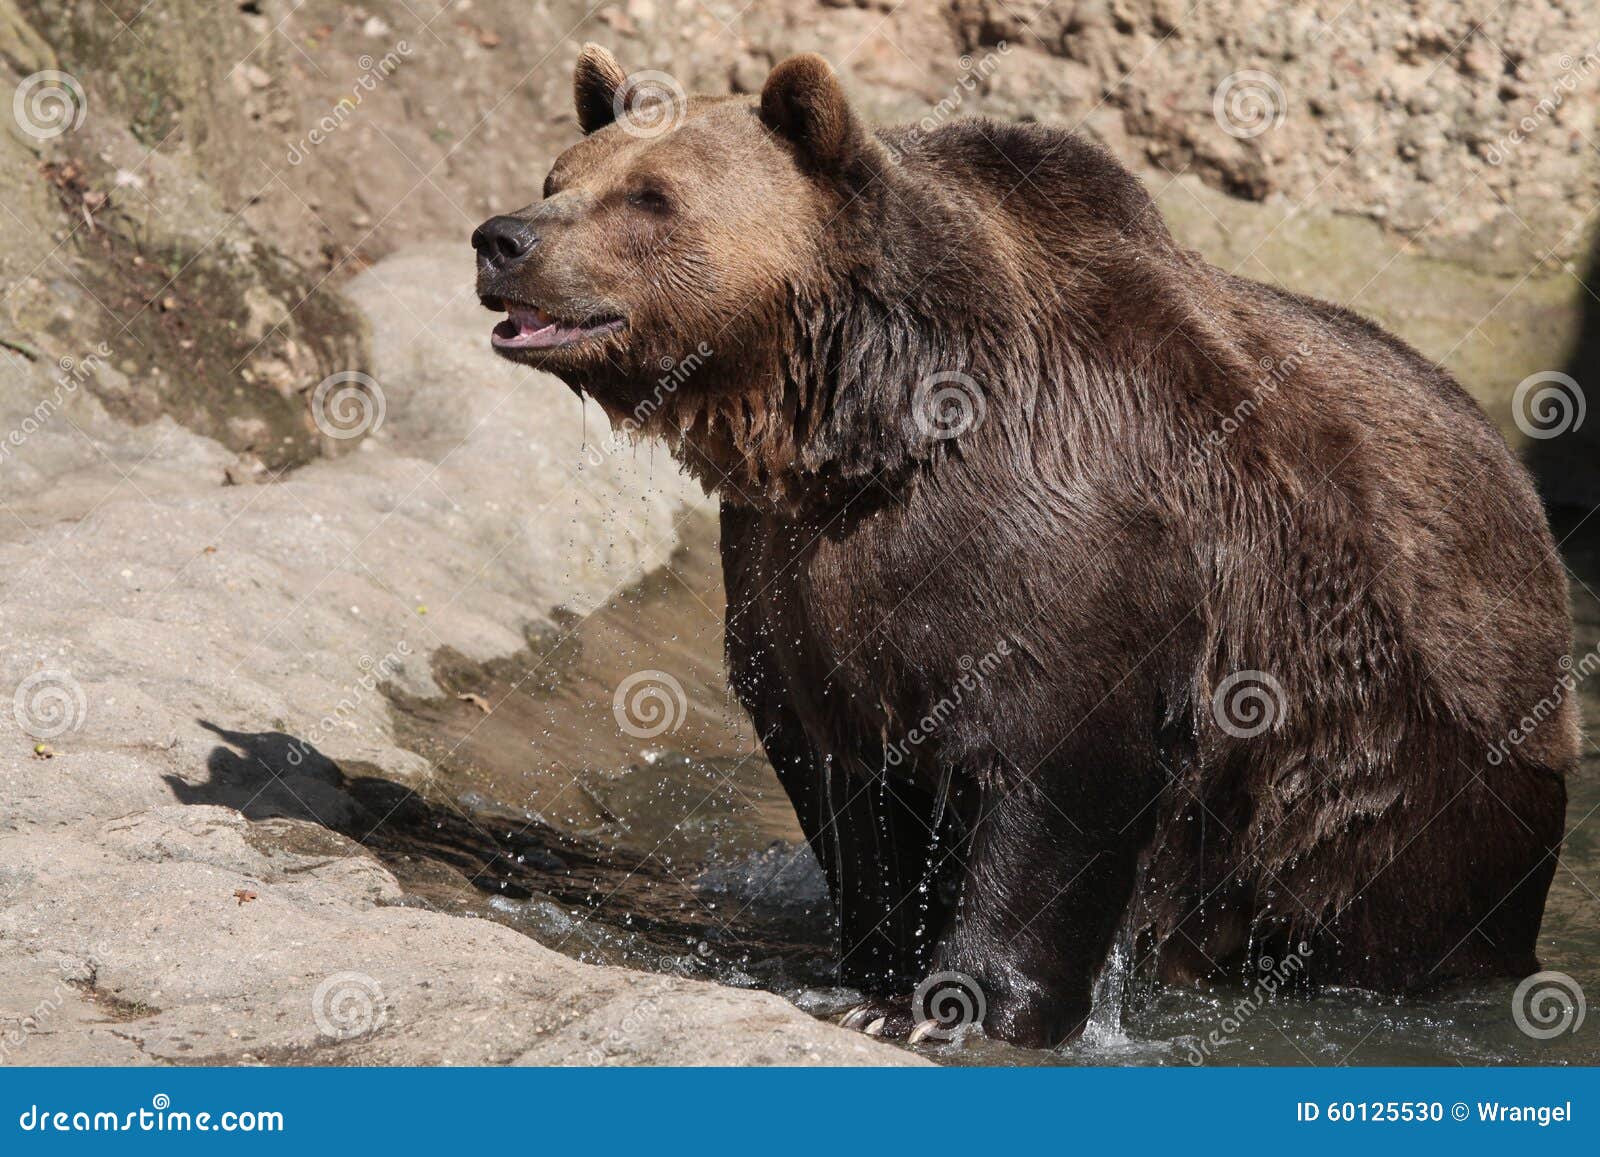 brown bear (ursus arctos).